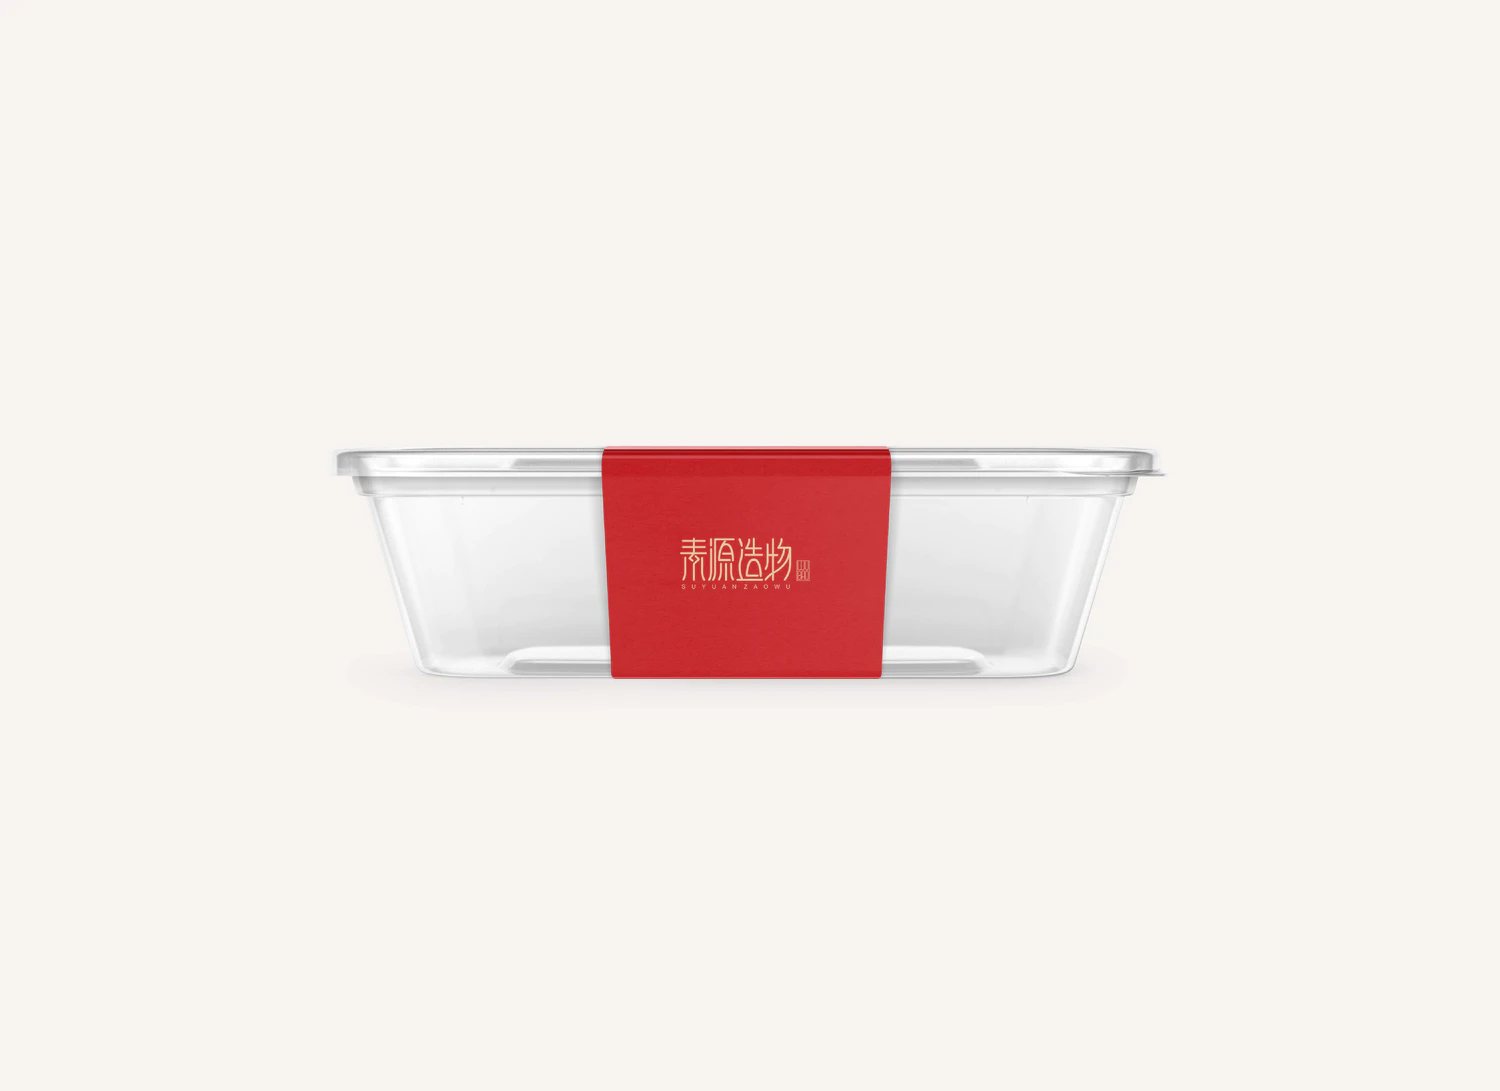 2612 32款餐饮餐厅国潮文创品牌标志VI提案智能贴图样机PSD设计素材模板图